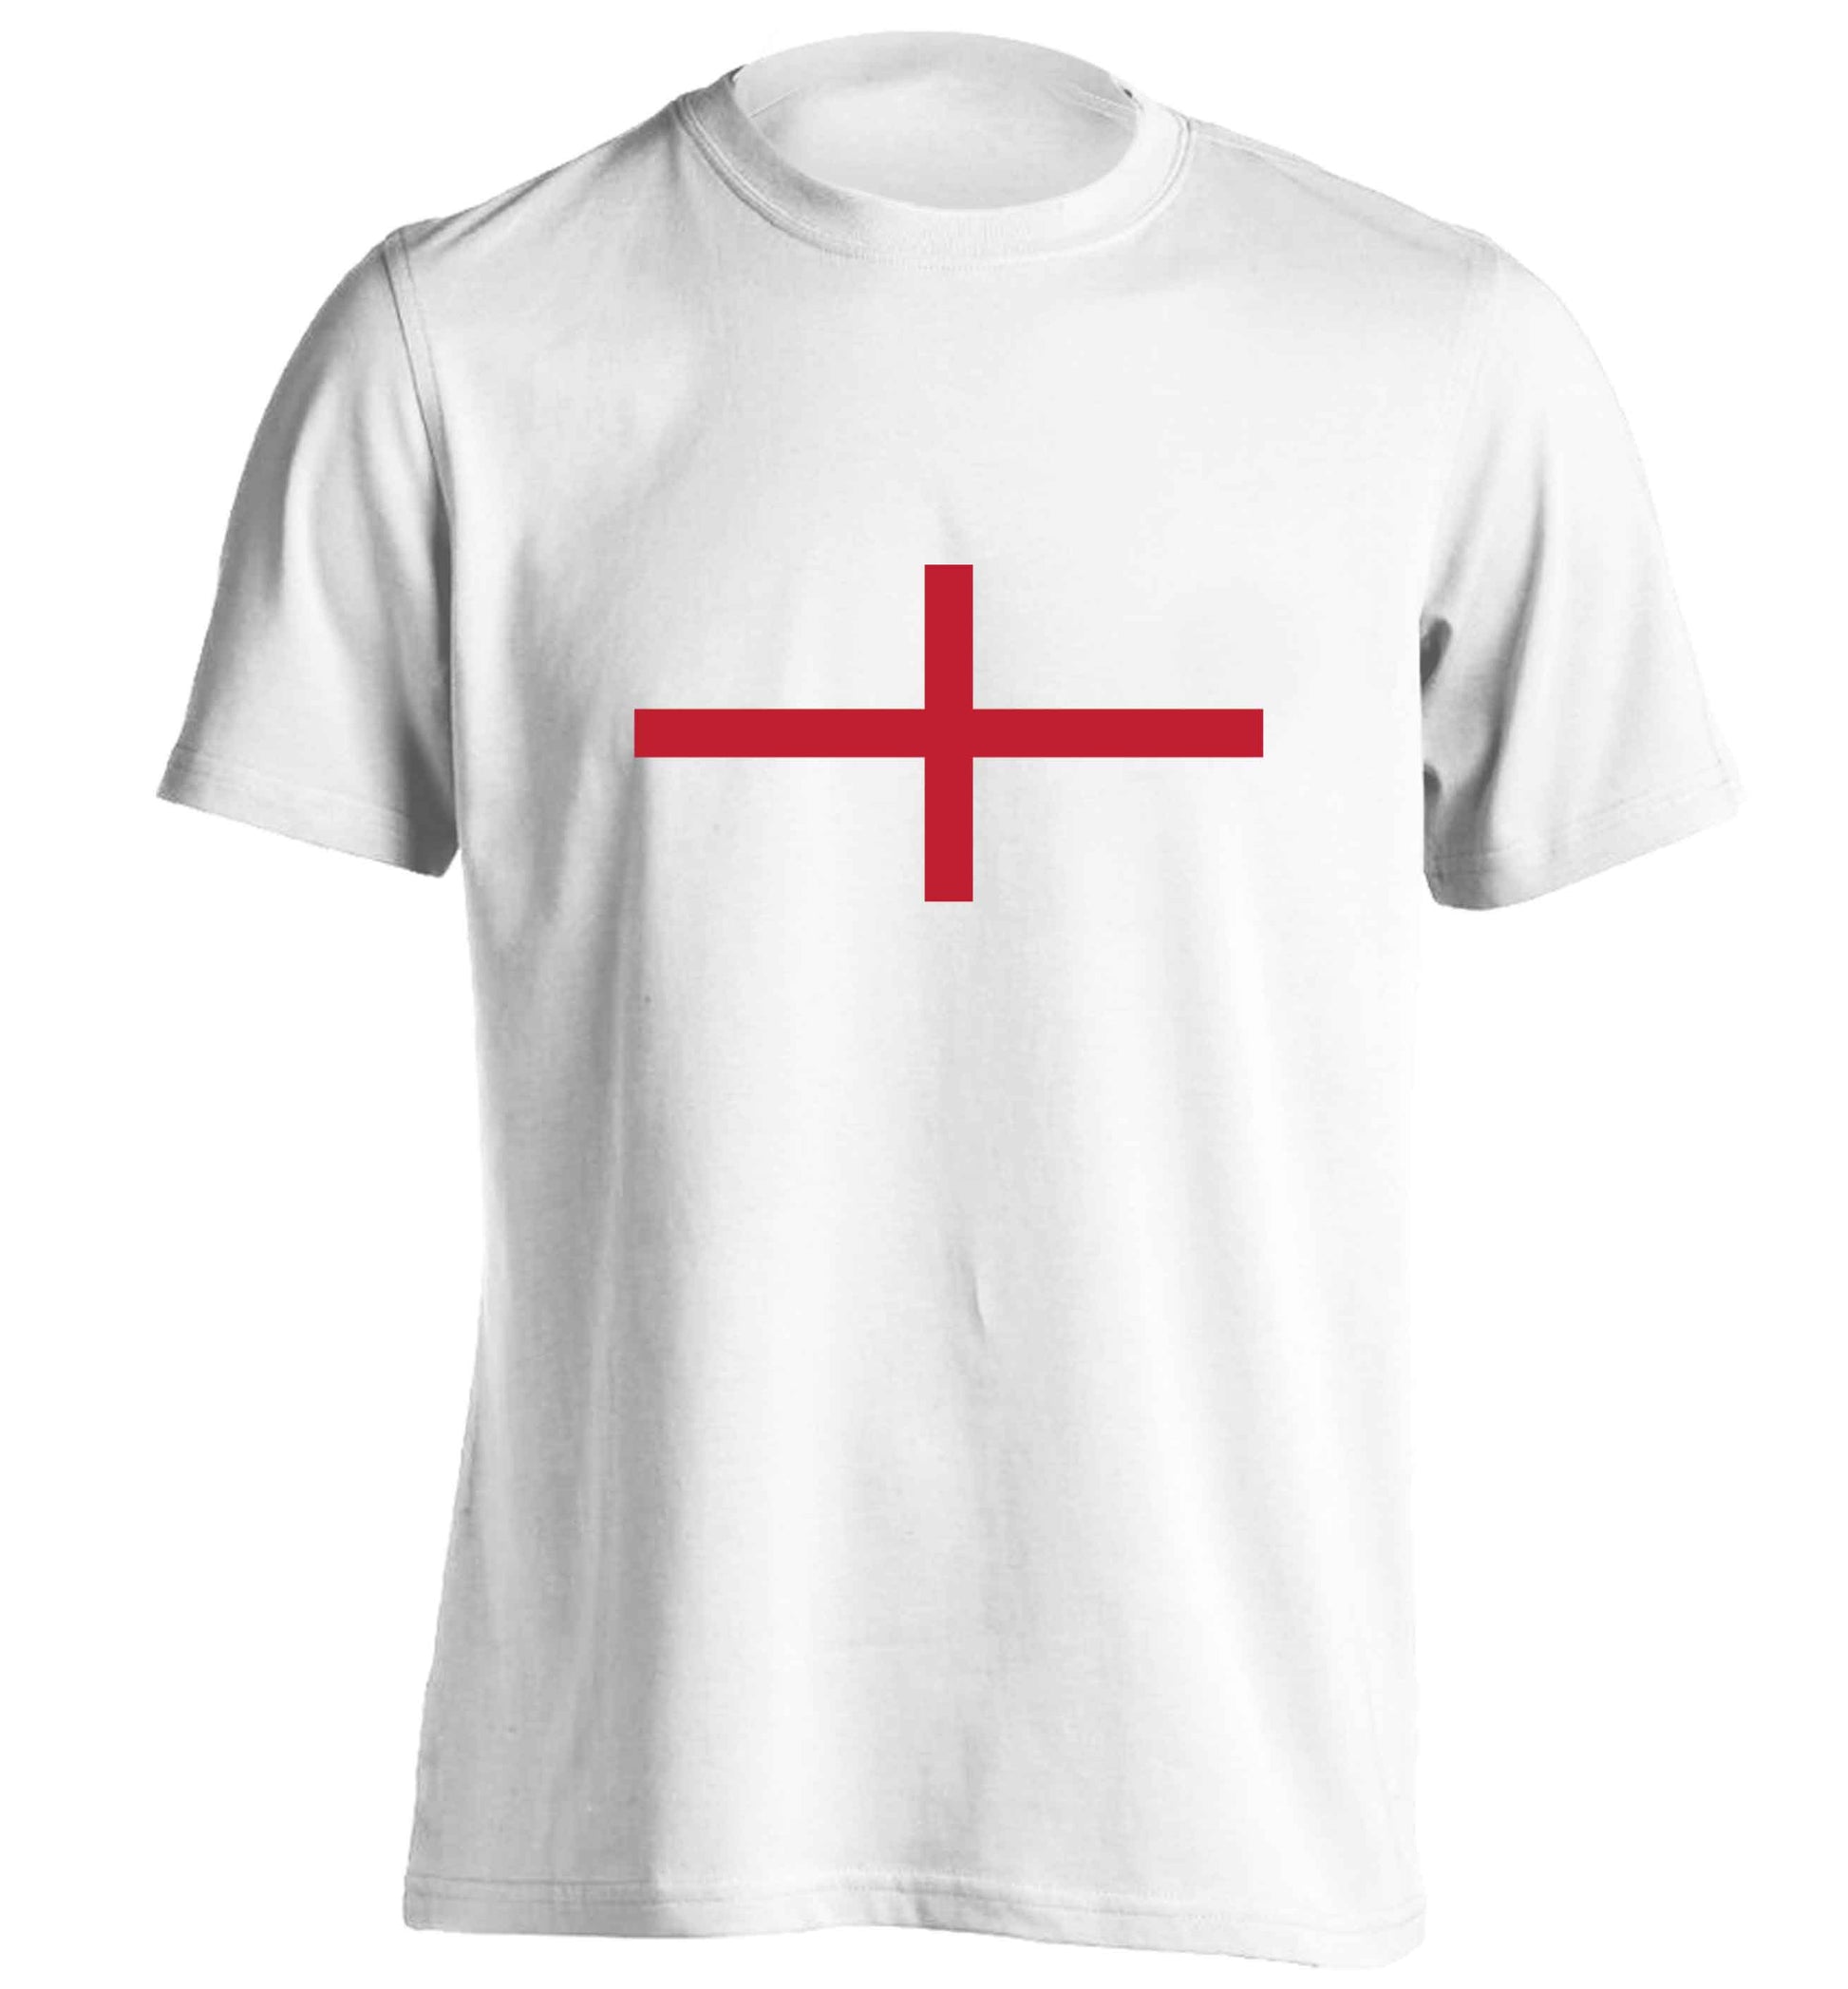 England Flag adults unisex white Tshirt 2XL